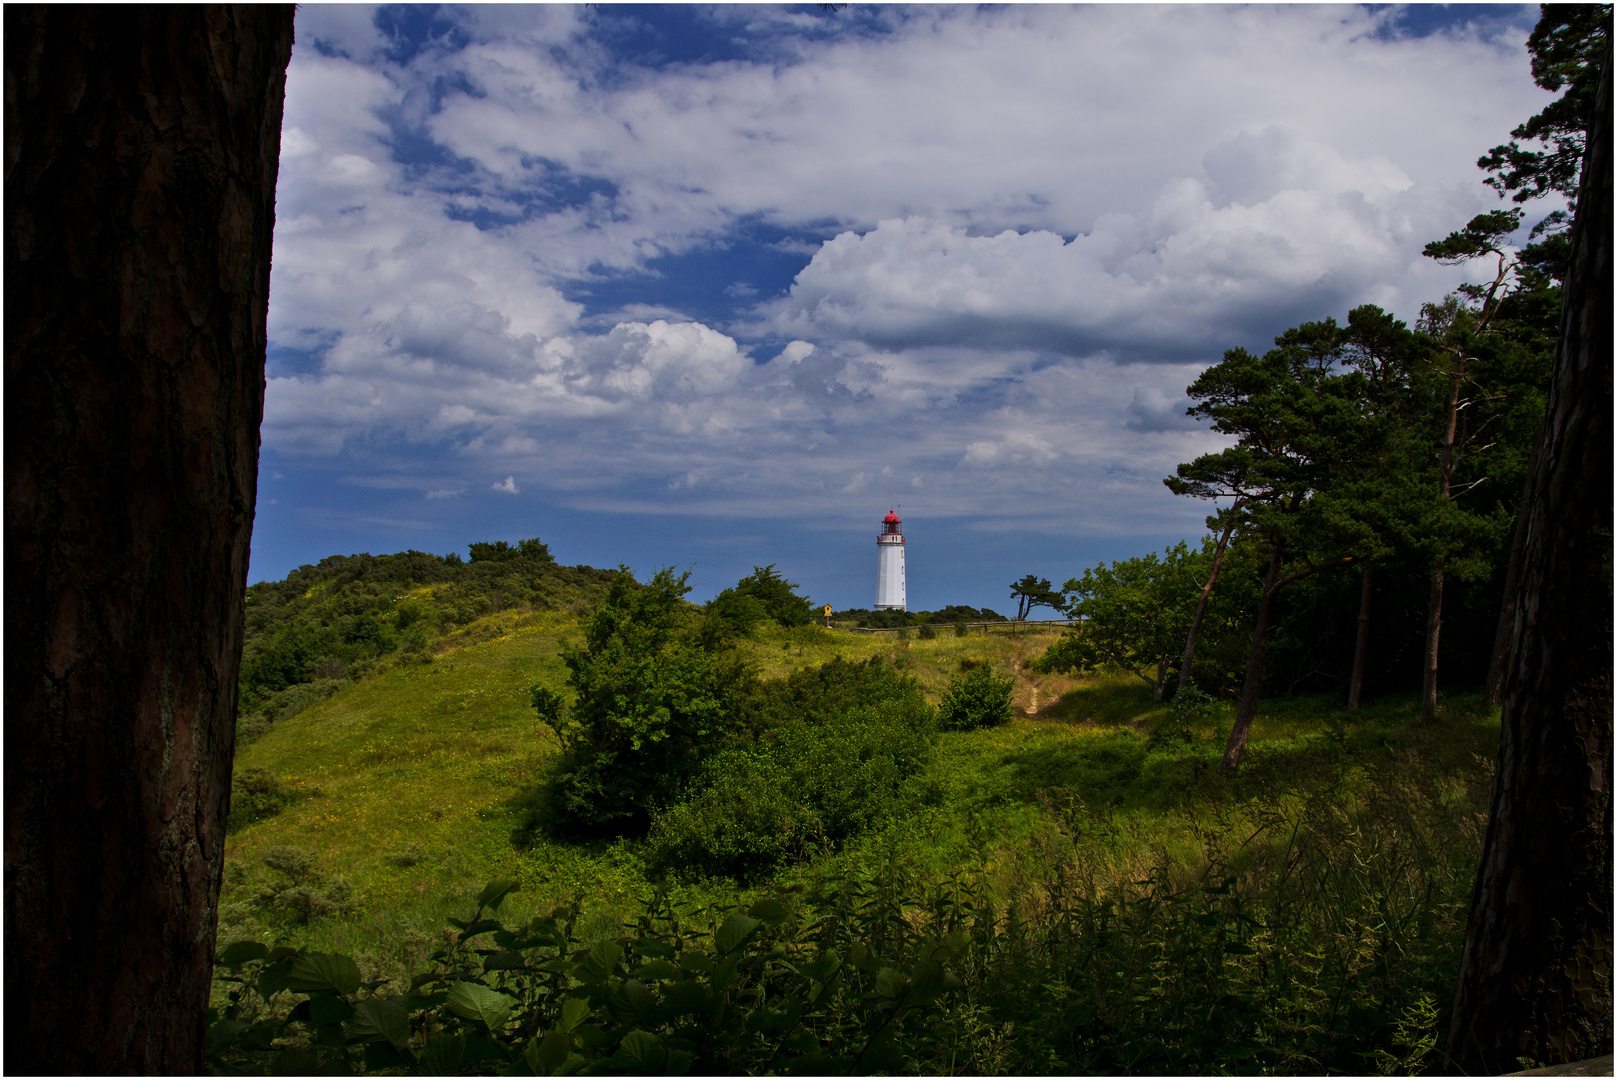 Der Leuchtturm von Hiddensee ist immer ein Bild wert